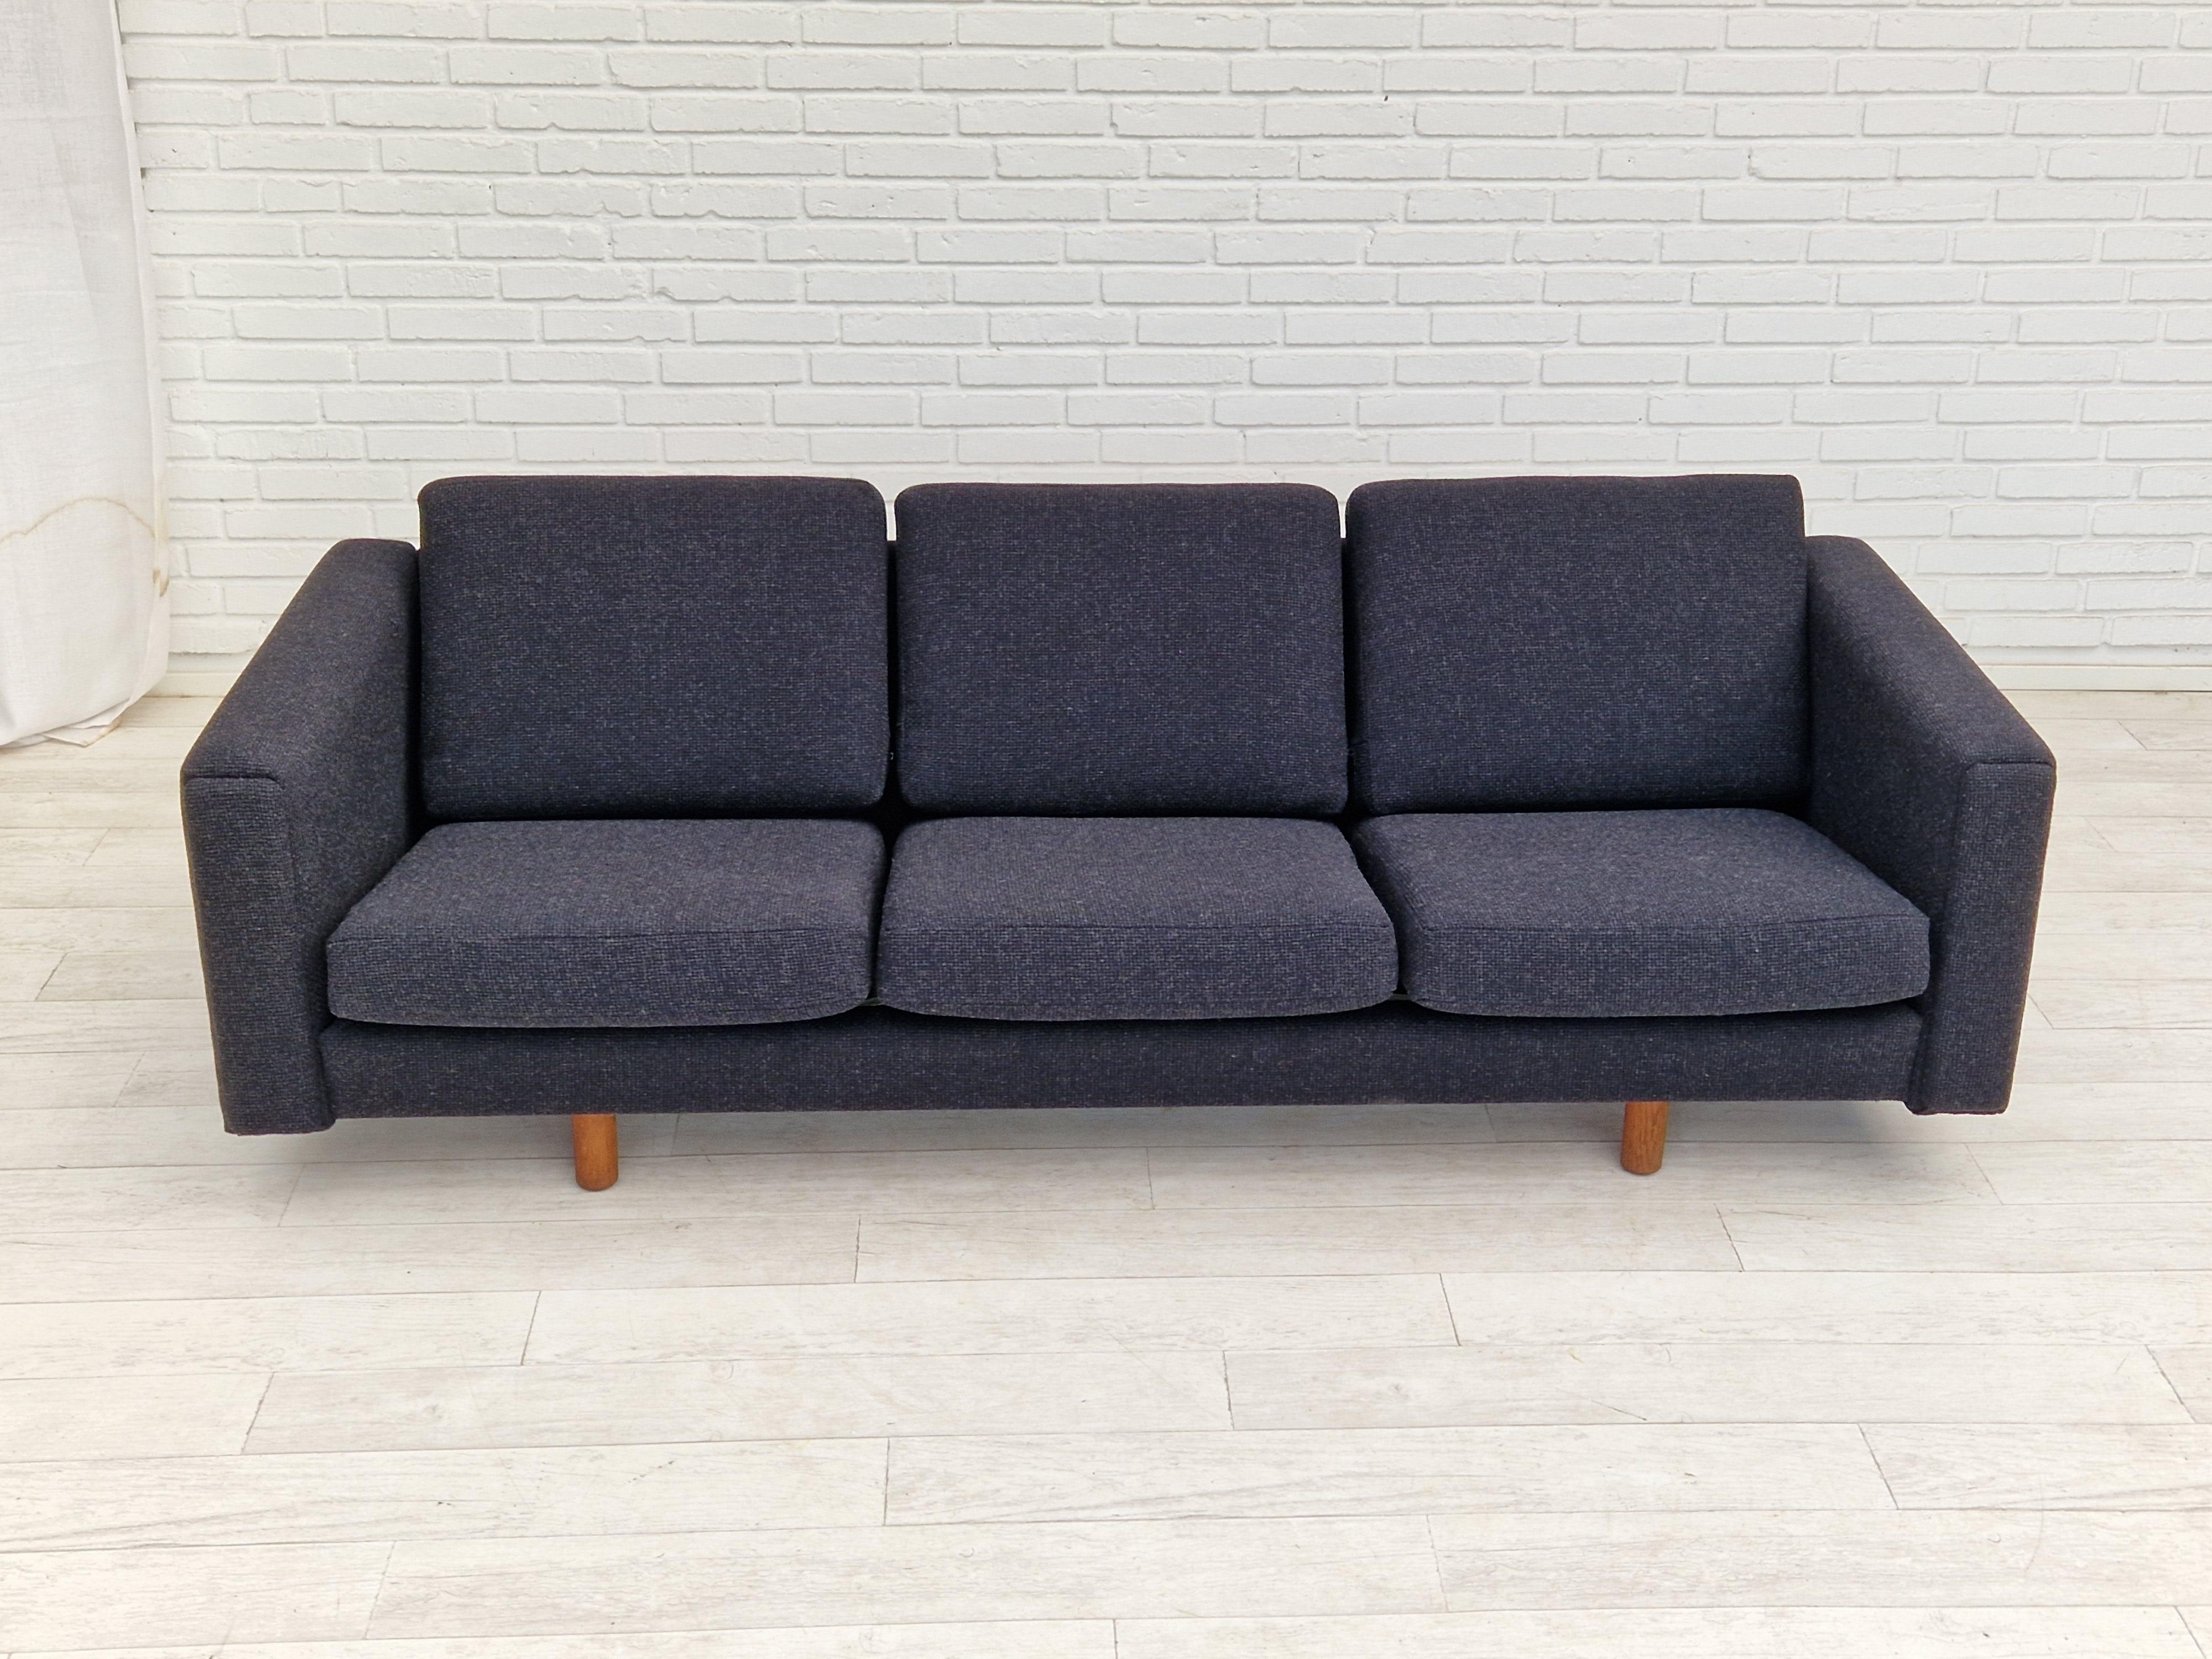 Scandinavian Modern 1970s, Danish design by H.J. Wegner, model GE300, reupholstered sofa. For Sale